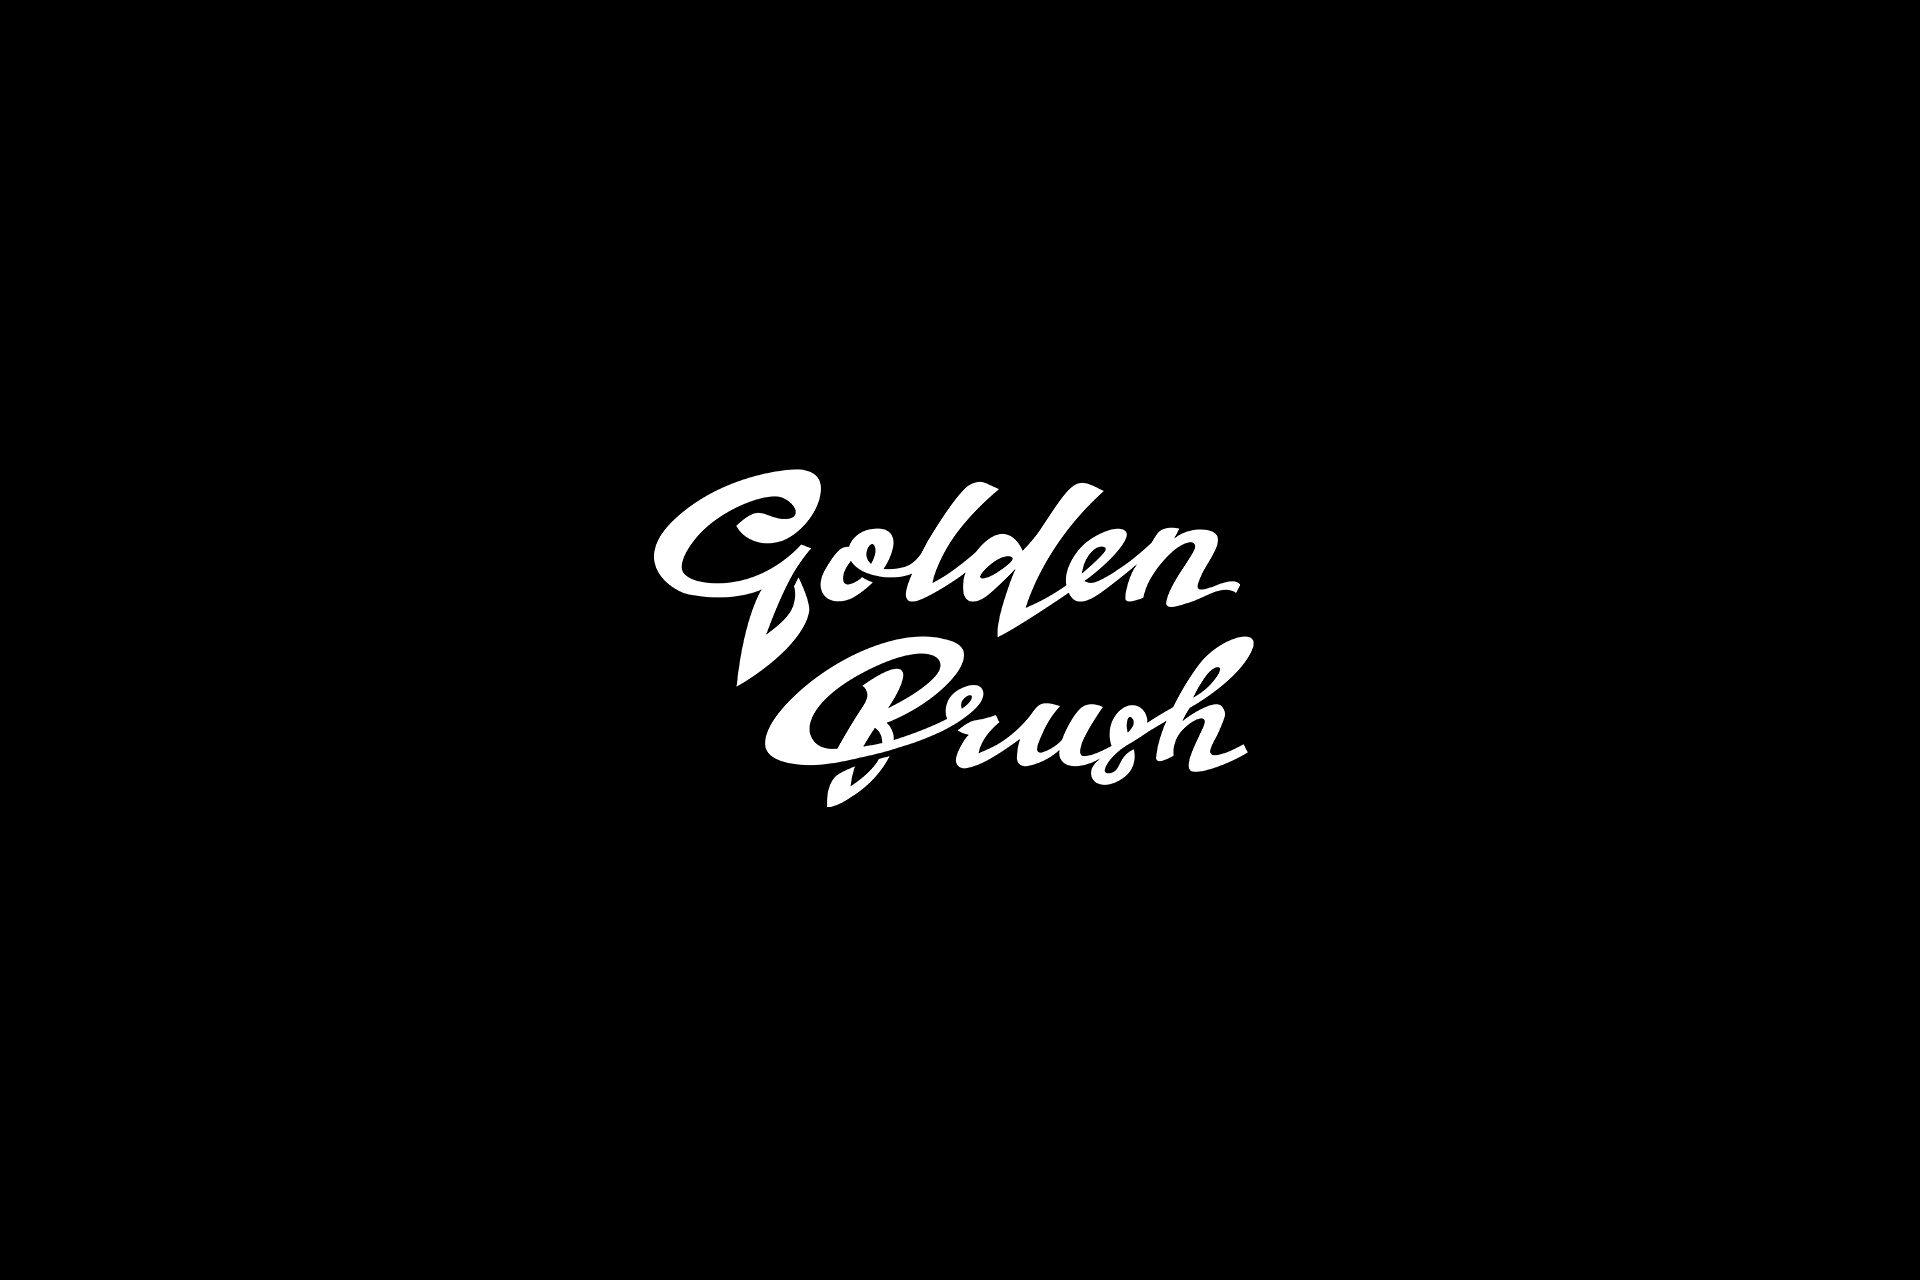 Логотип для школы парикмахеров Golden Brush